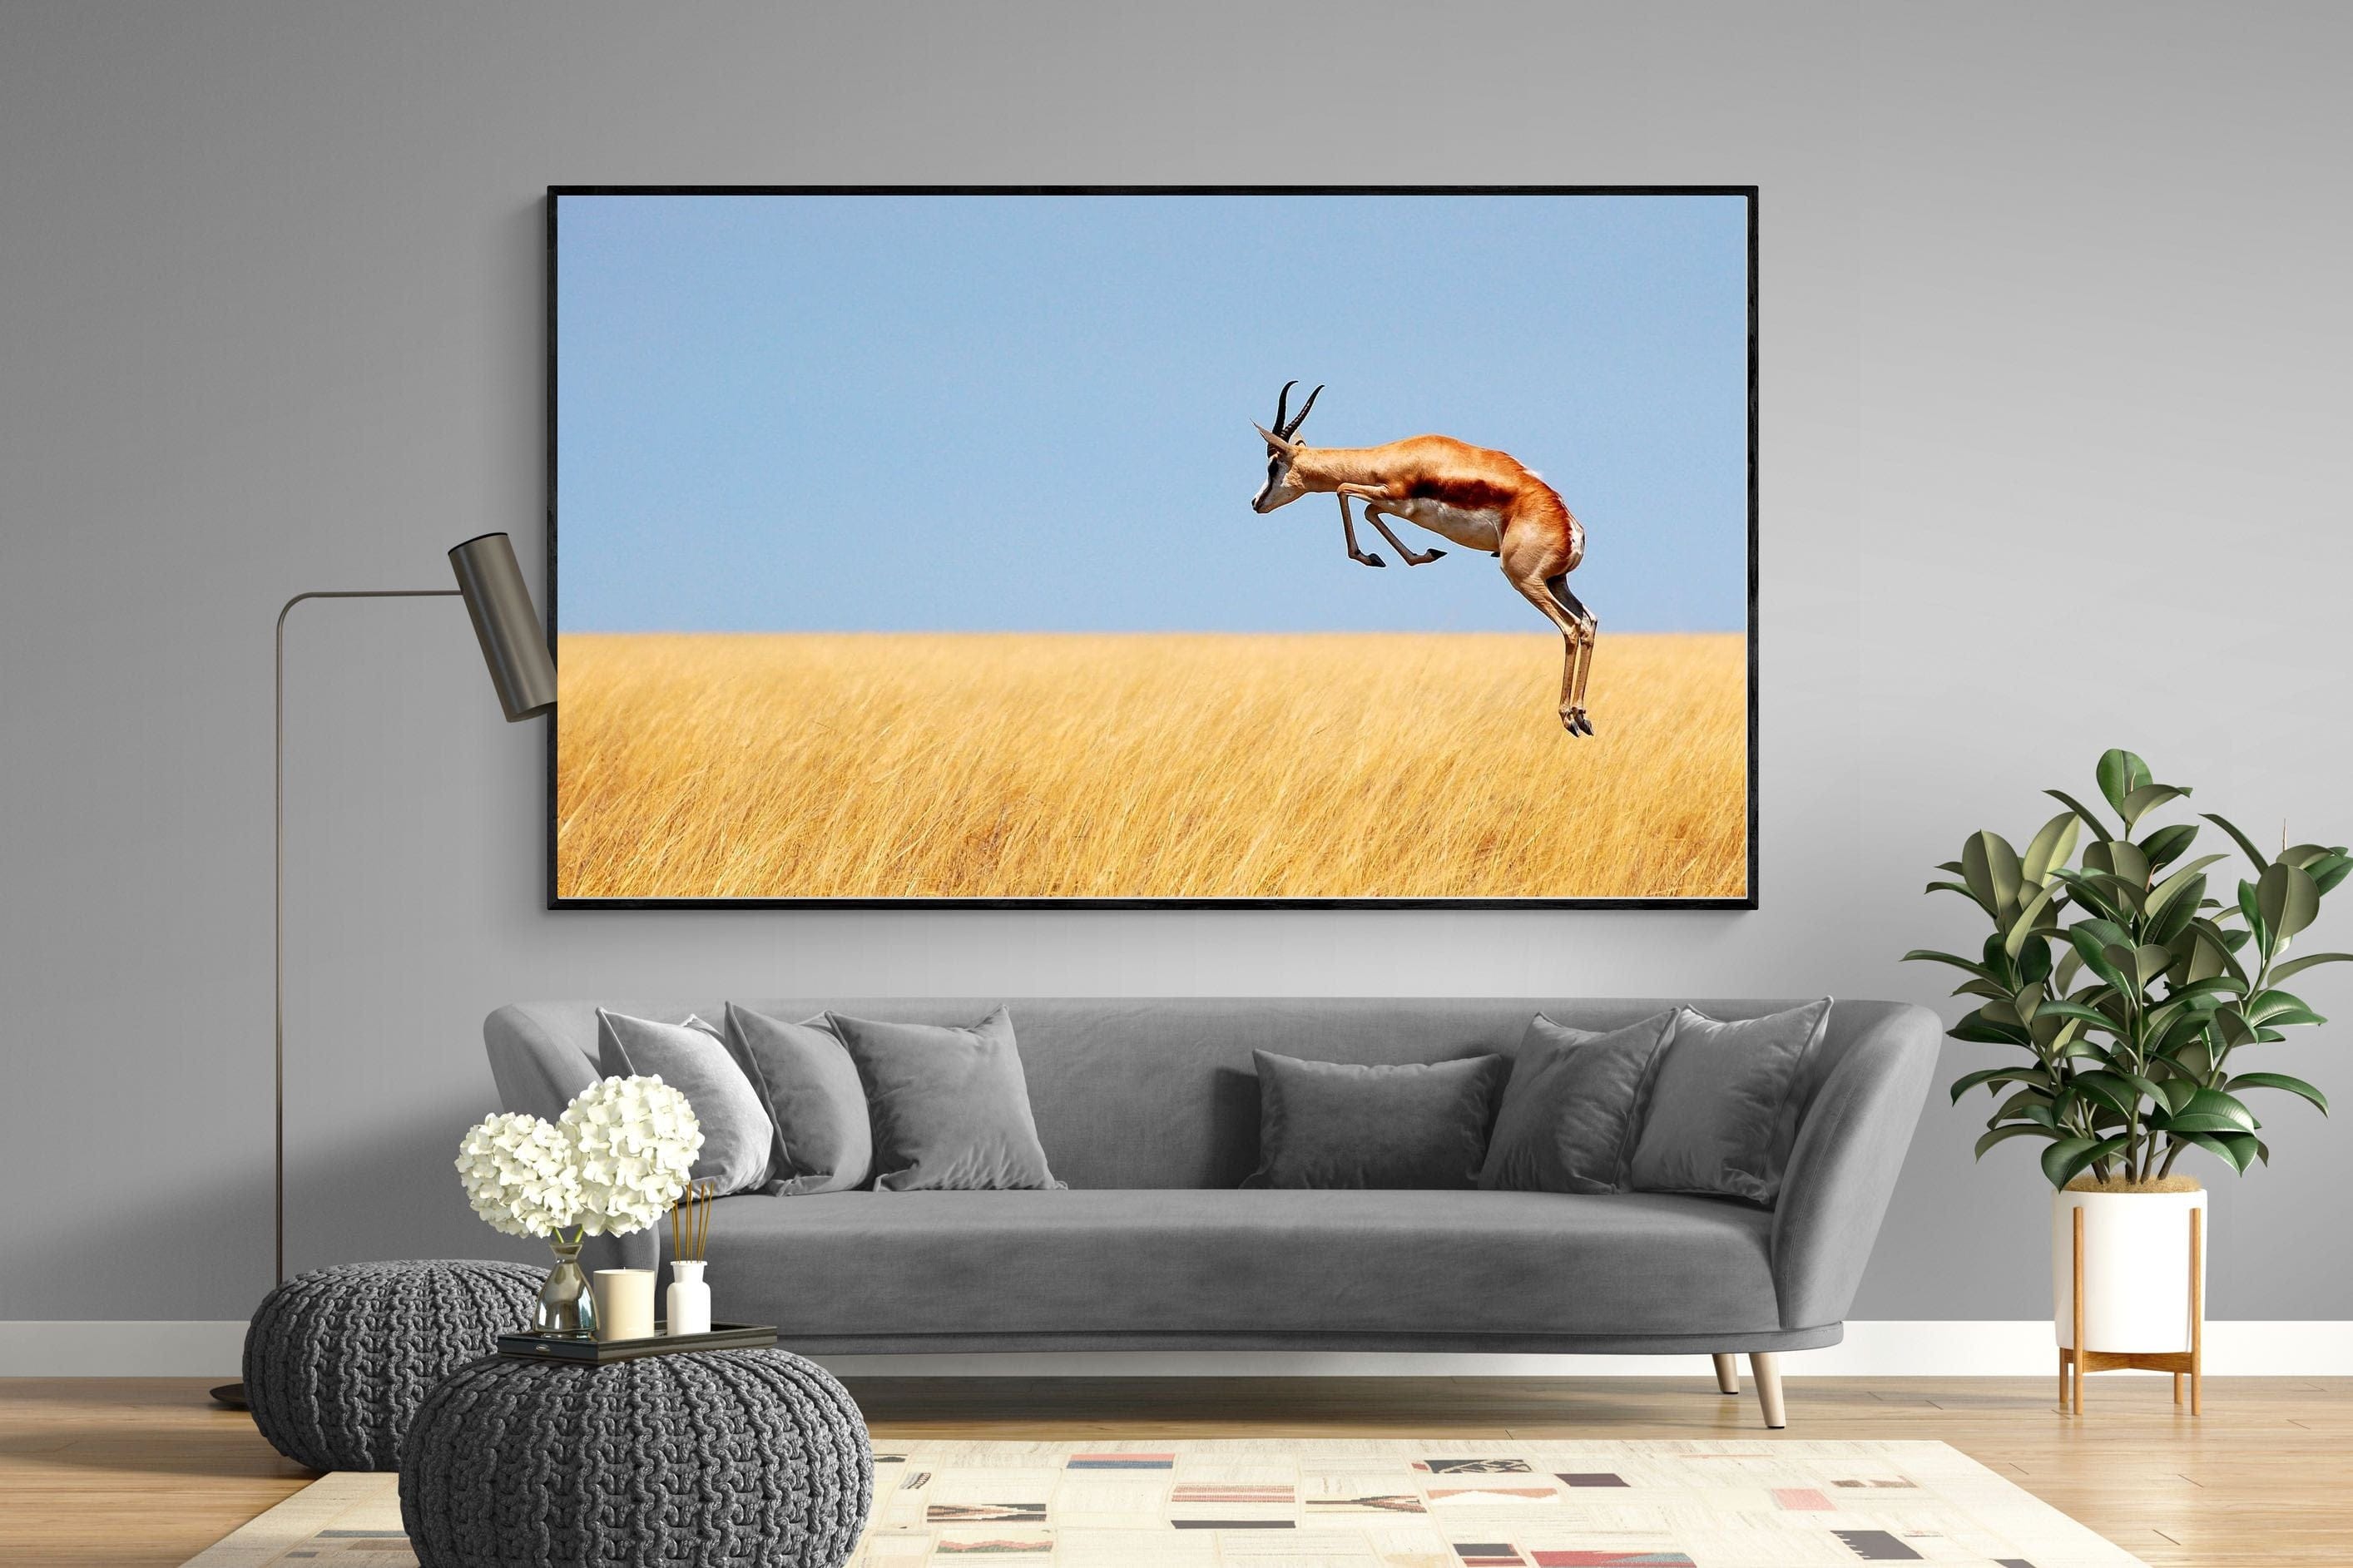 Springy-Wall_Art-220 x 130cm-Mounted Canvas-Black-Pixalot